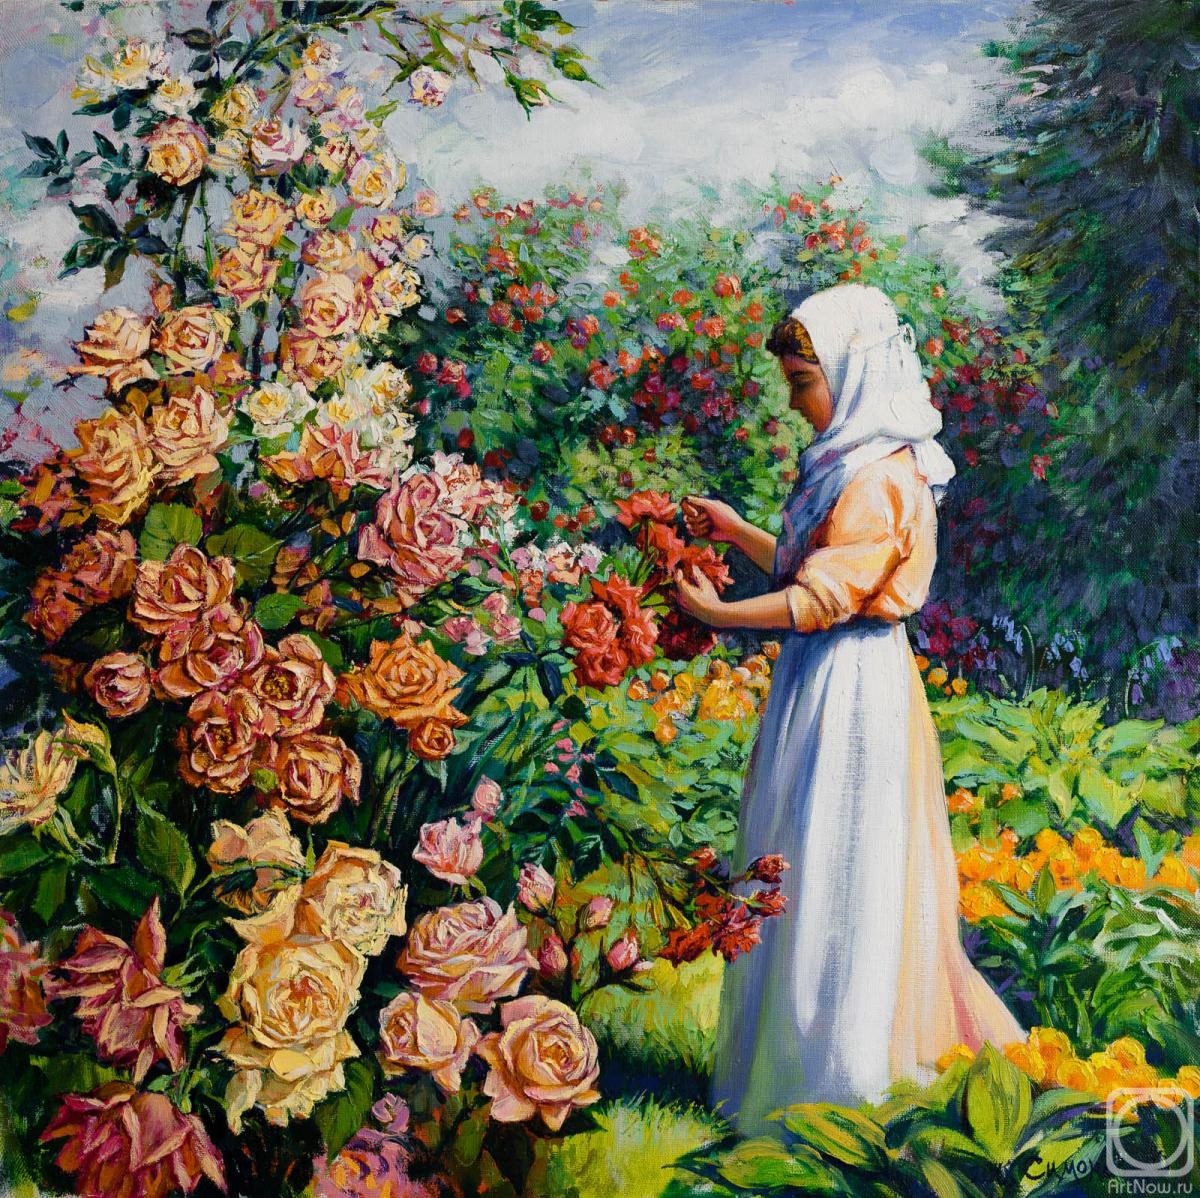 Simonova Olga. The nun in a garden